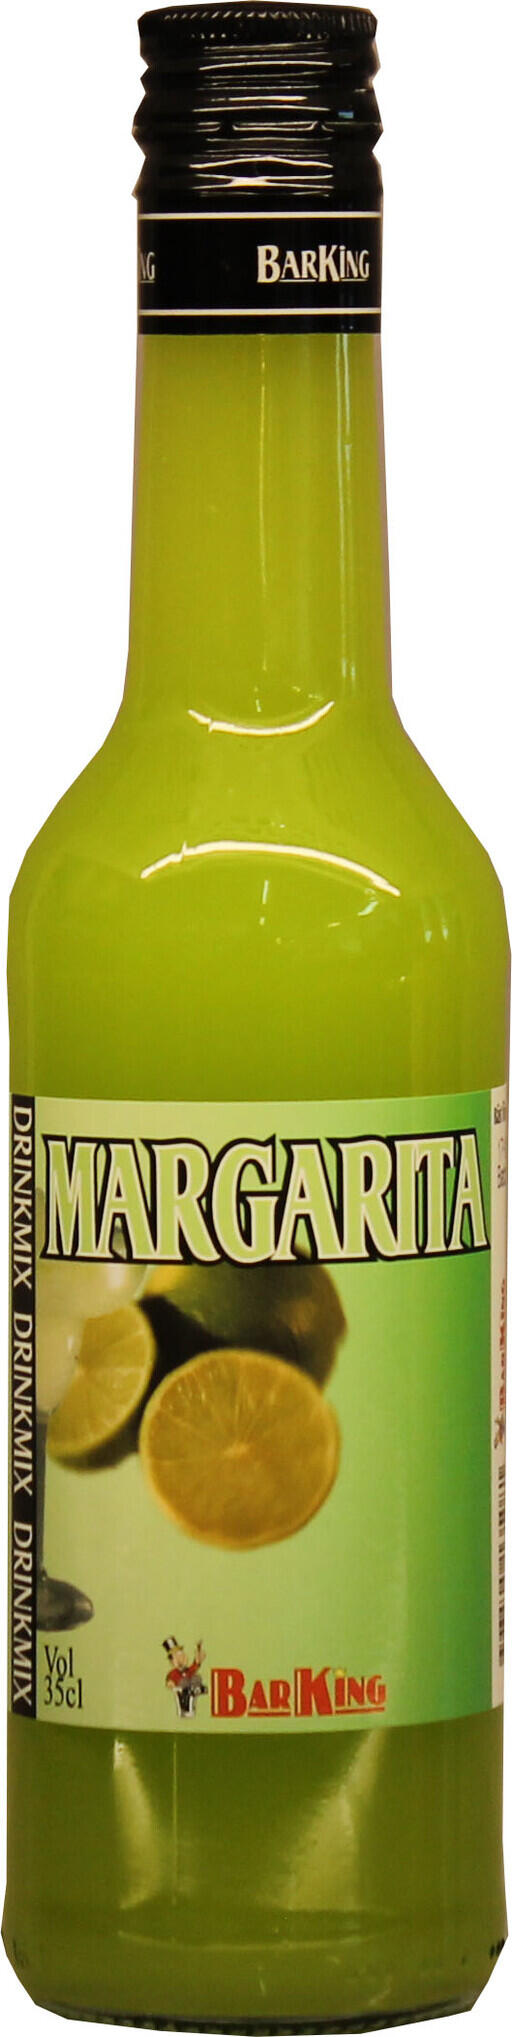 Margarita 35 cl